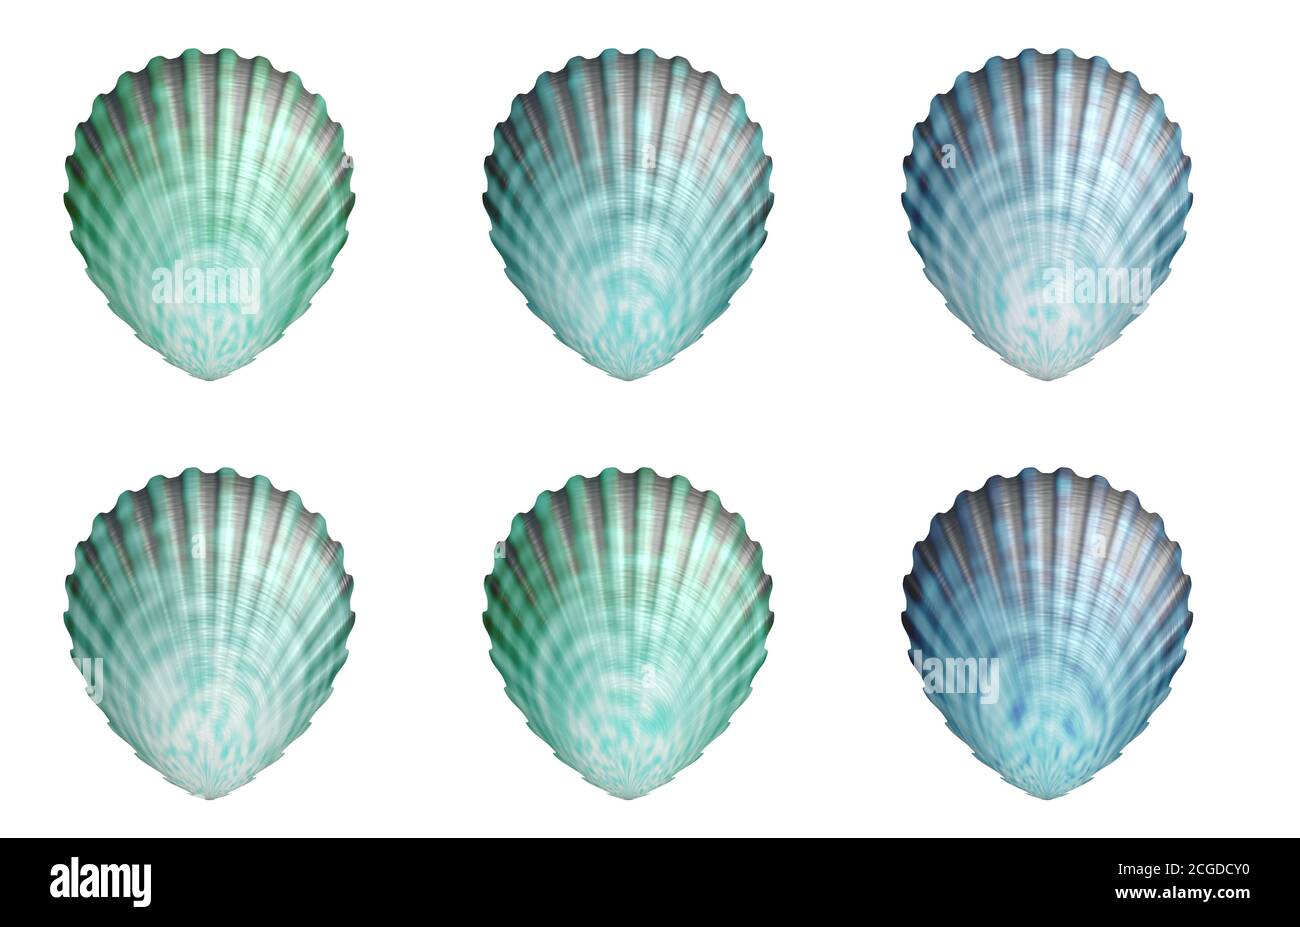 sea shell shellfish Stock Photo